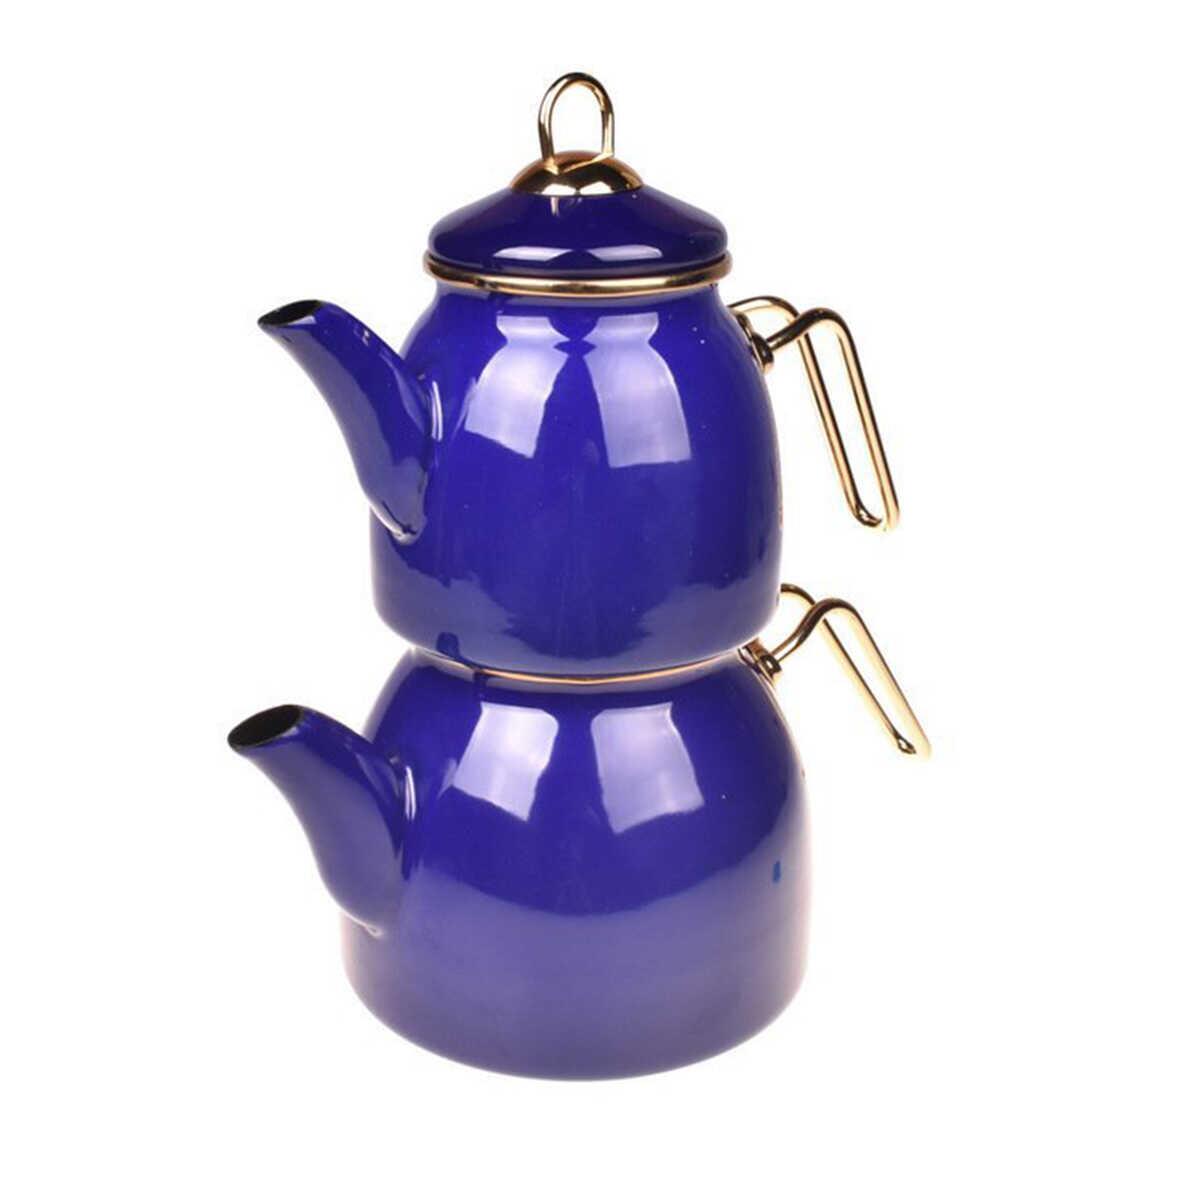 Taşev Bambum Sultan Teapot Set Navy Blue 2